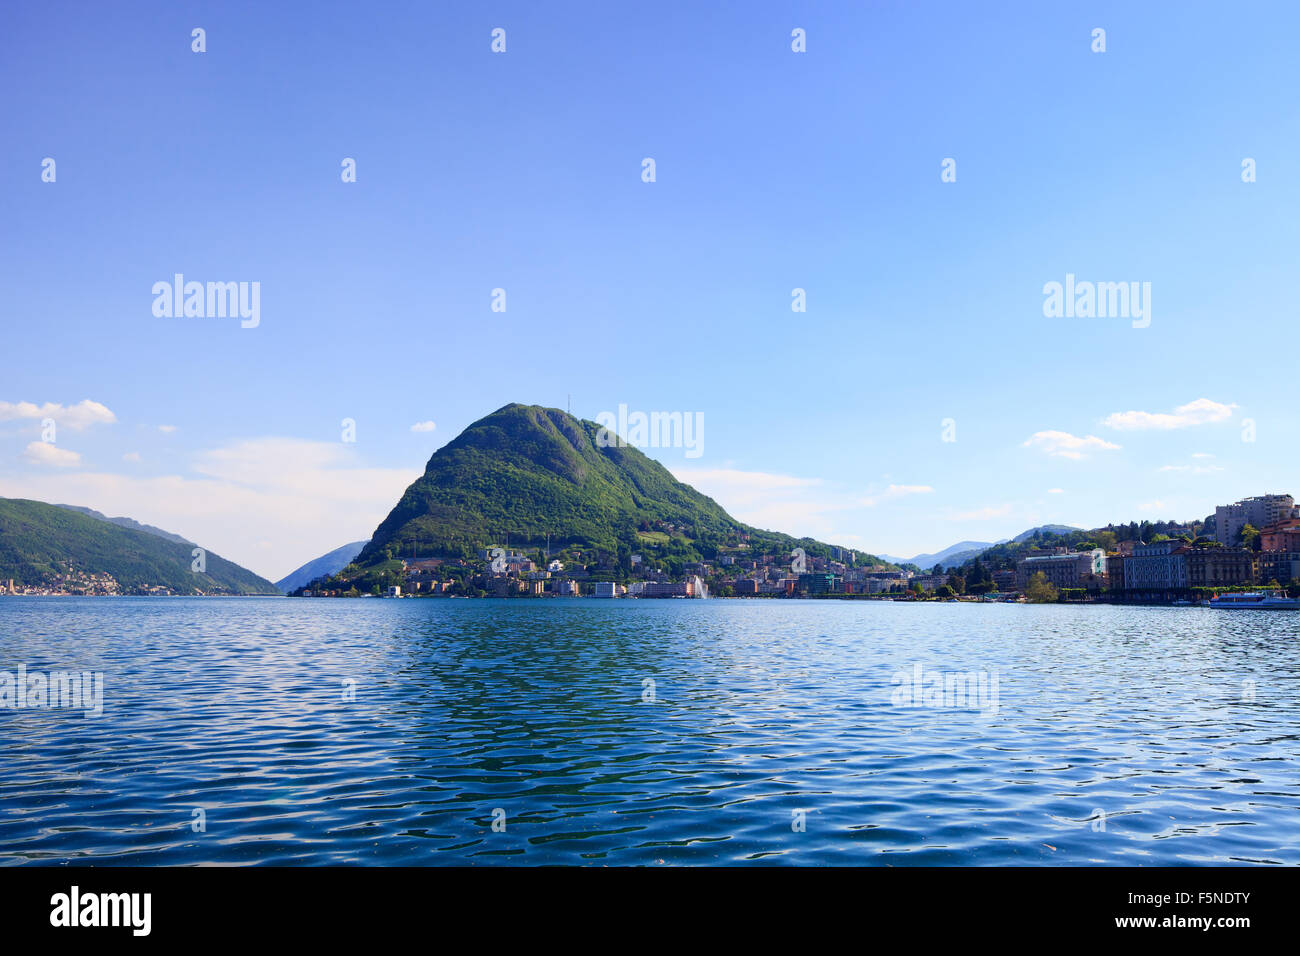 Le lac de Lugano et les montagnes paysage. Ville, l'eau, ciel bleu et les montagnes. Tessin, Suisse ou la Suisse, l'Europe. Banque D'Images